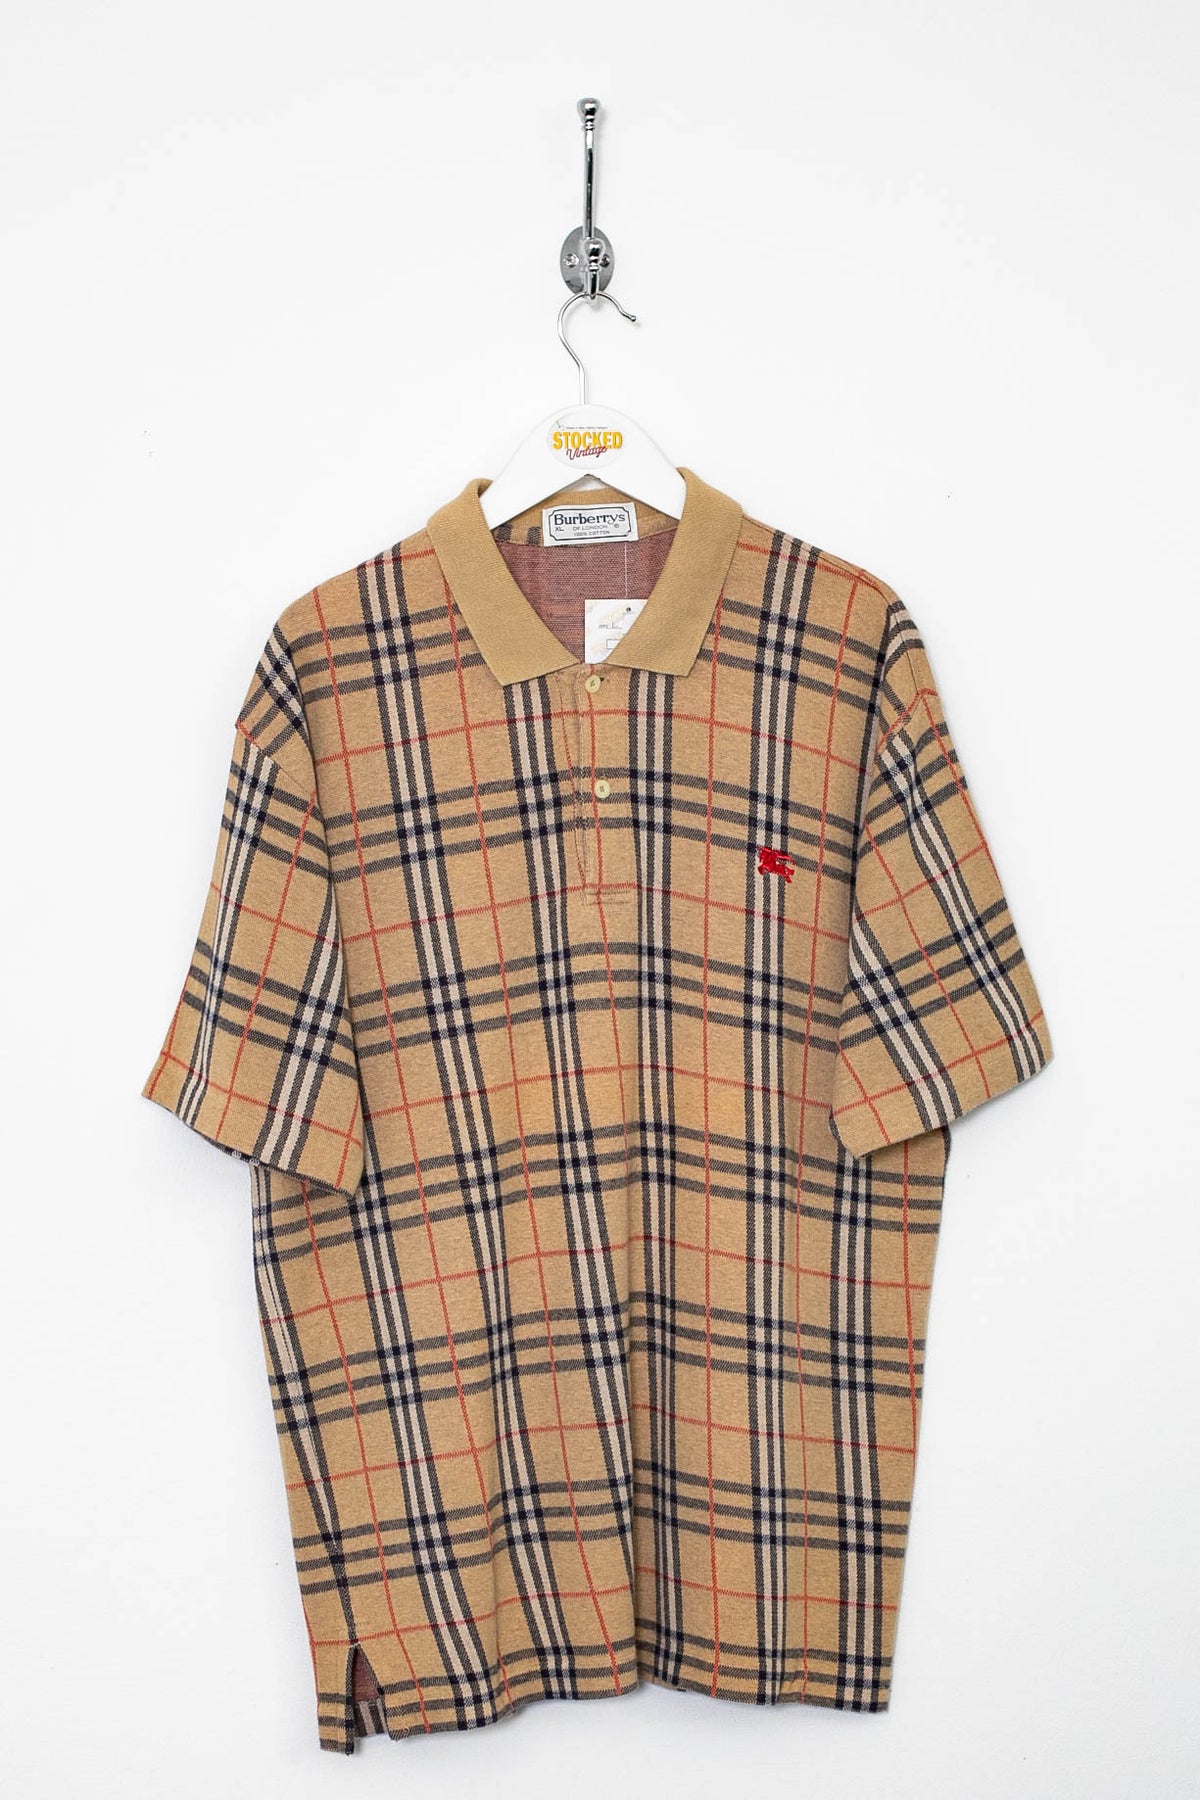 90s Burberry Nova Check Polo Shirt (L)